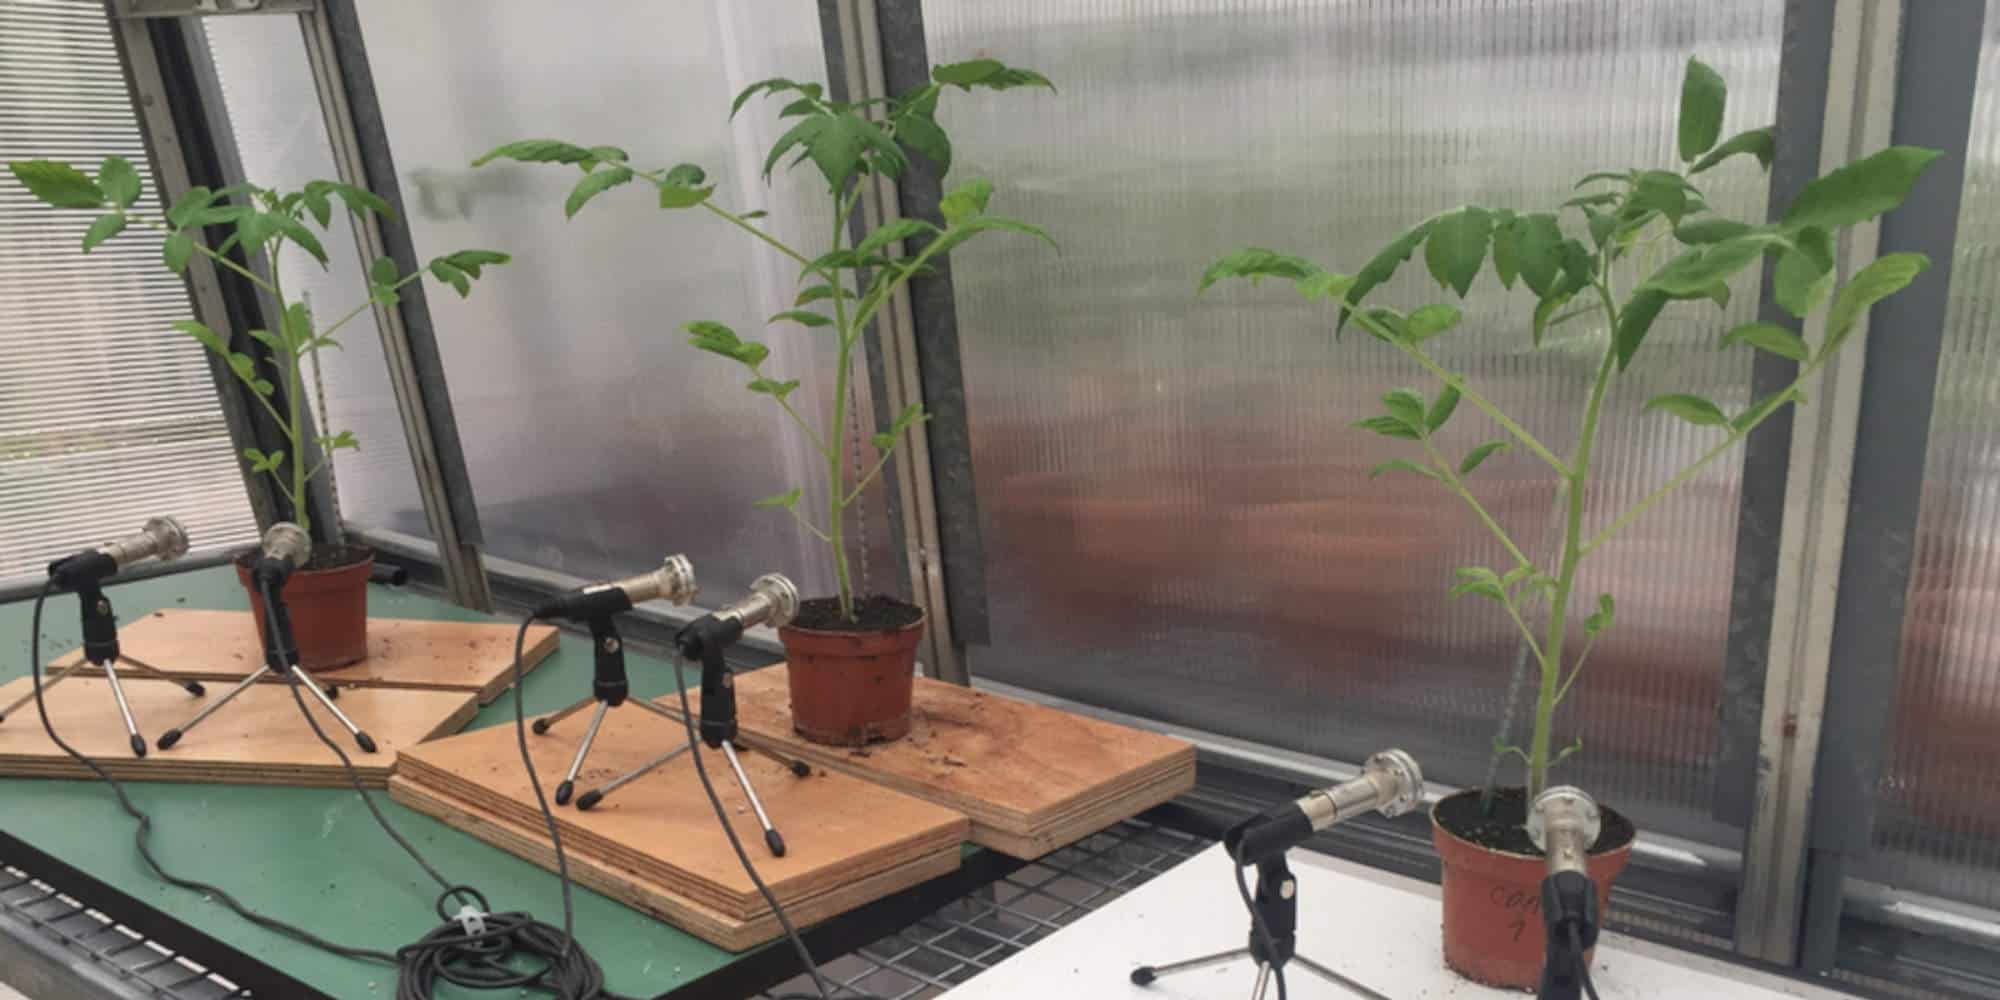 Επιστήμονες κατέγραψαν τους ήχους που εκπέμπουν τα φυτά όταν στρεσσάρονται